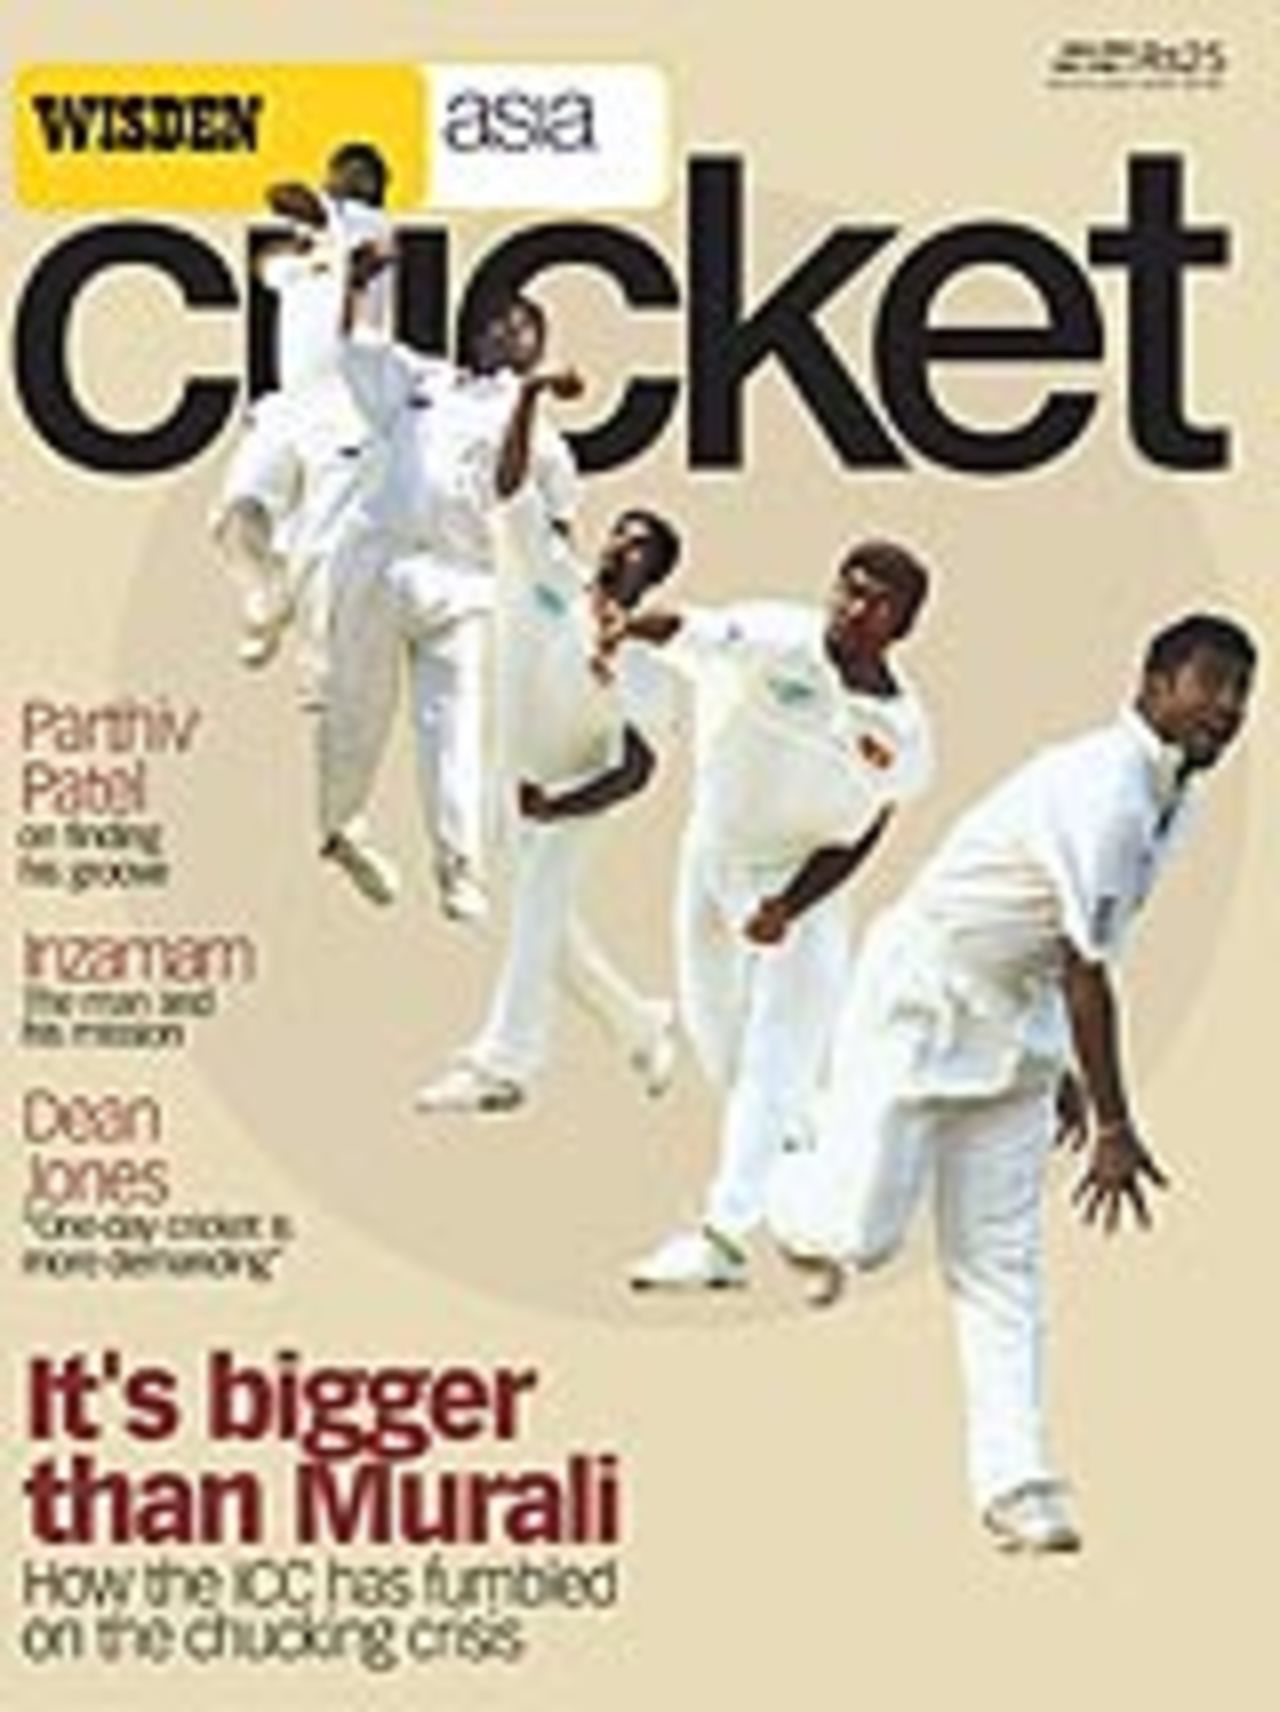 Wisden Asia Cricket June 2004 cover